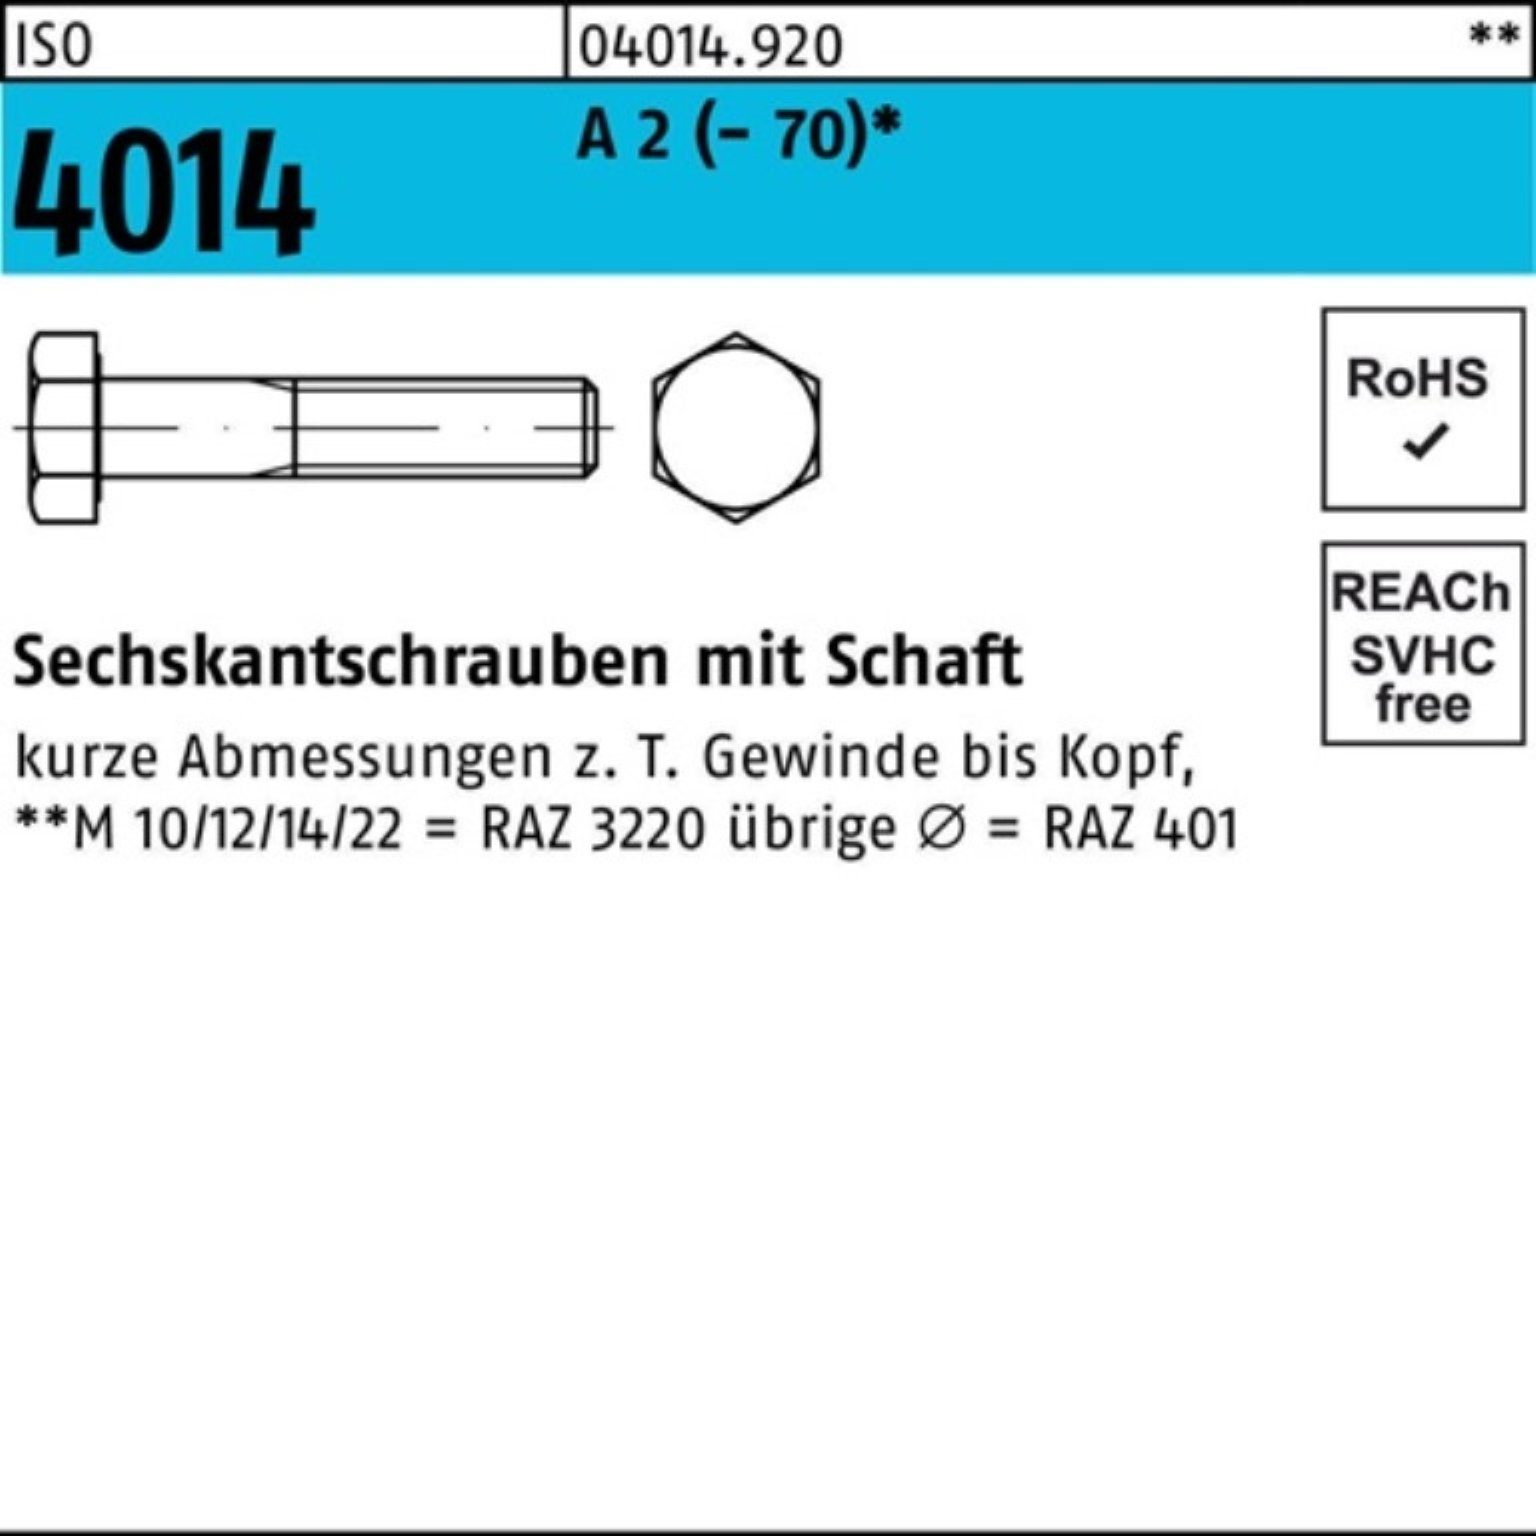 Bufab Sechskantschraube 100er Pack Sechskantschraube ISO 4014 Schaft M12x 110 A 2 (70) 25 St